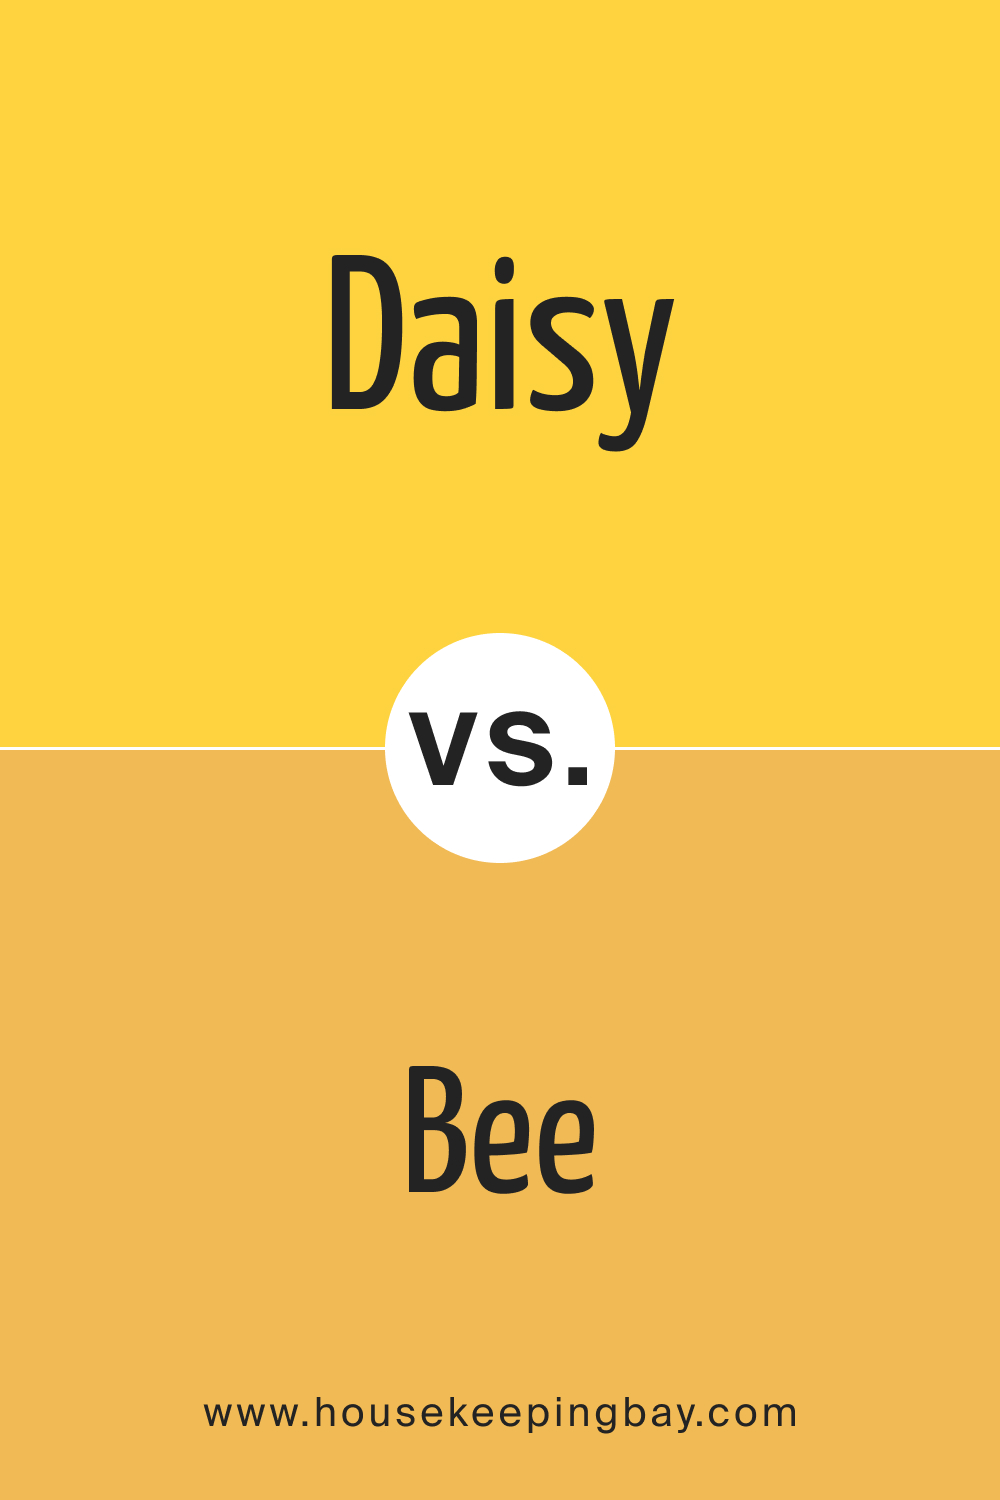 Daisy SW 6910 vs SW 6683 Bee